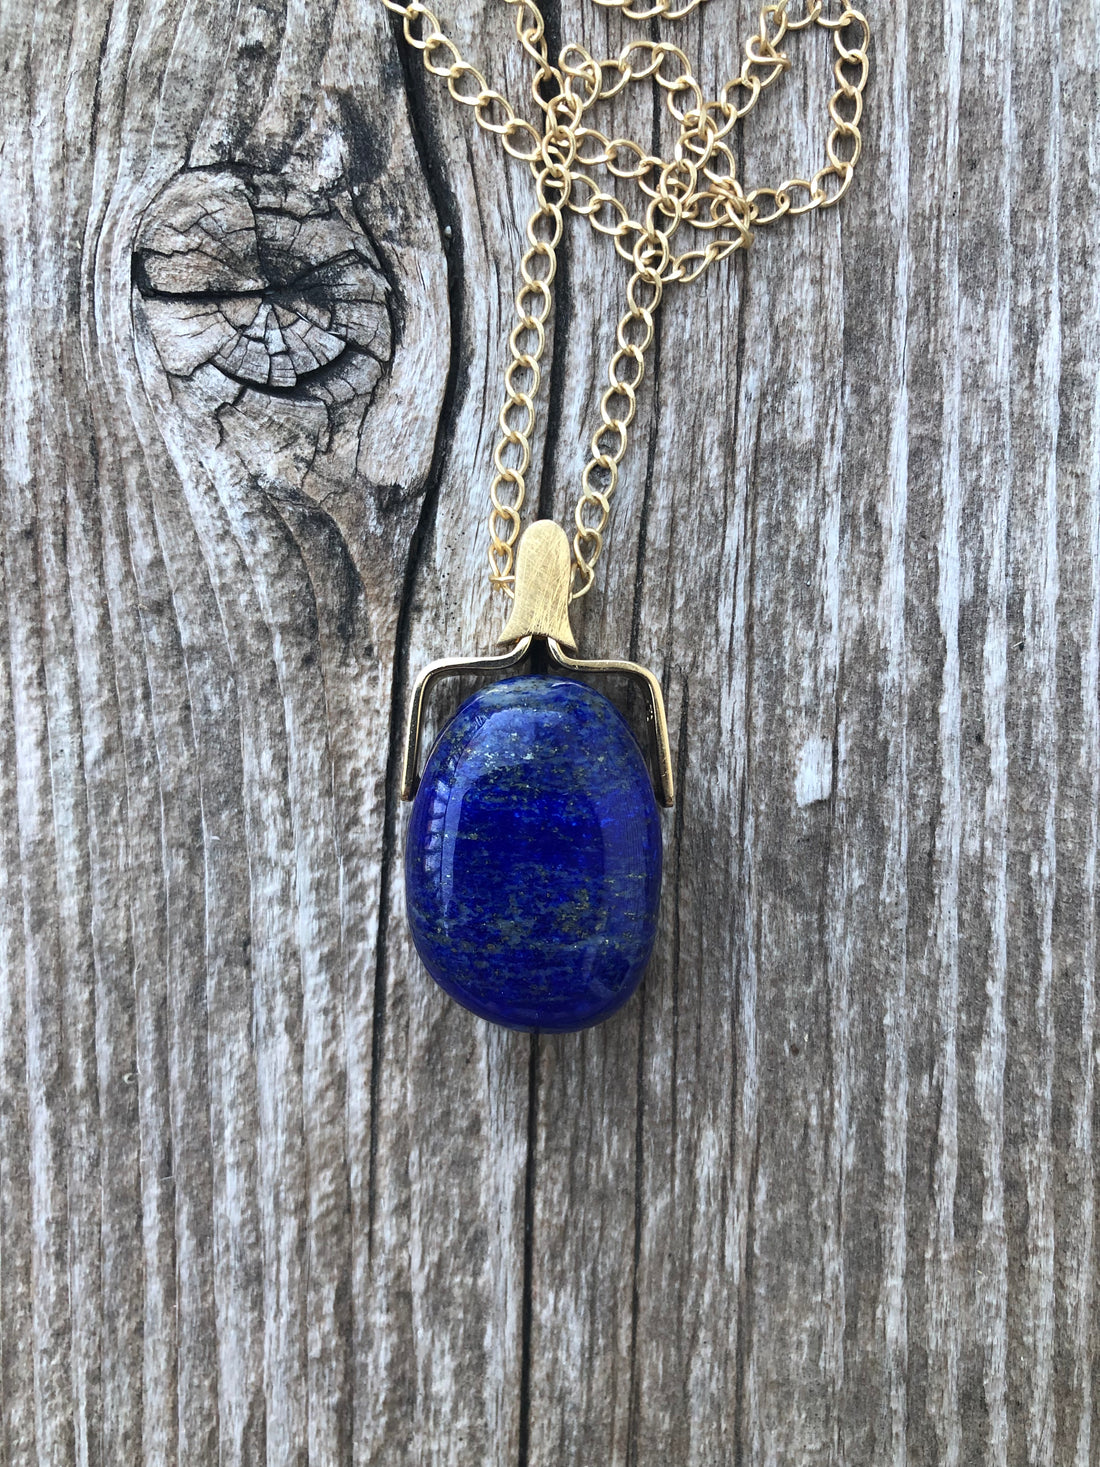 Lapis Lazuli for Awakening, Protection, and Awareness.